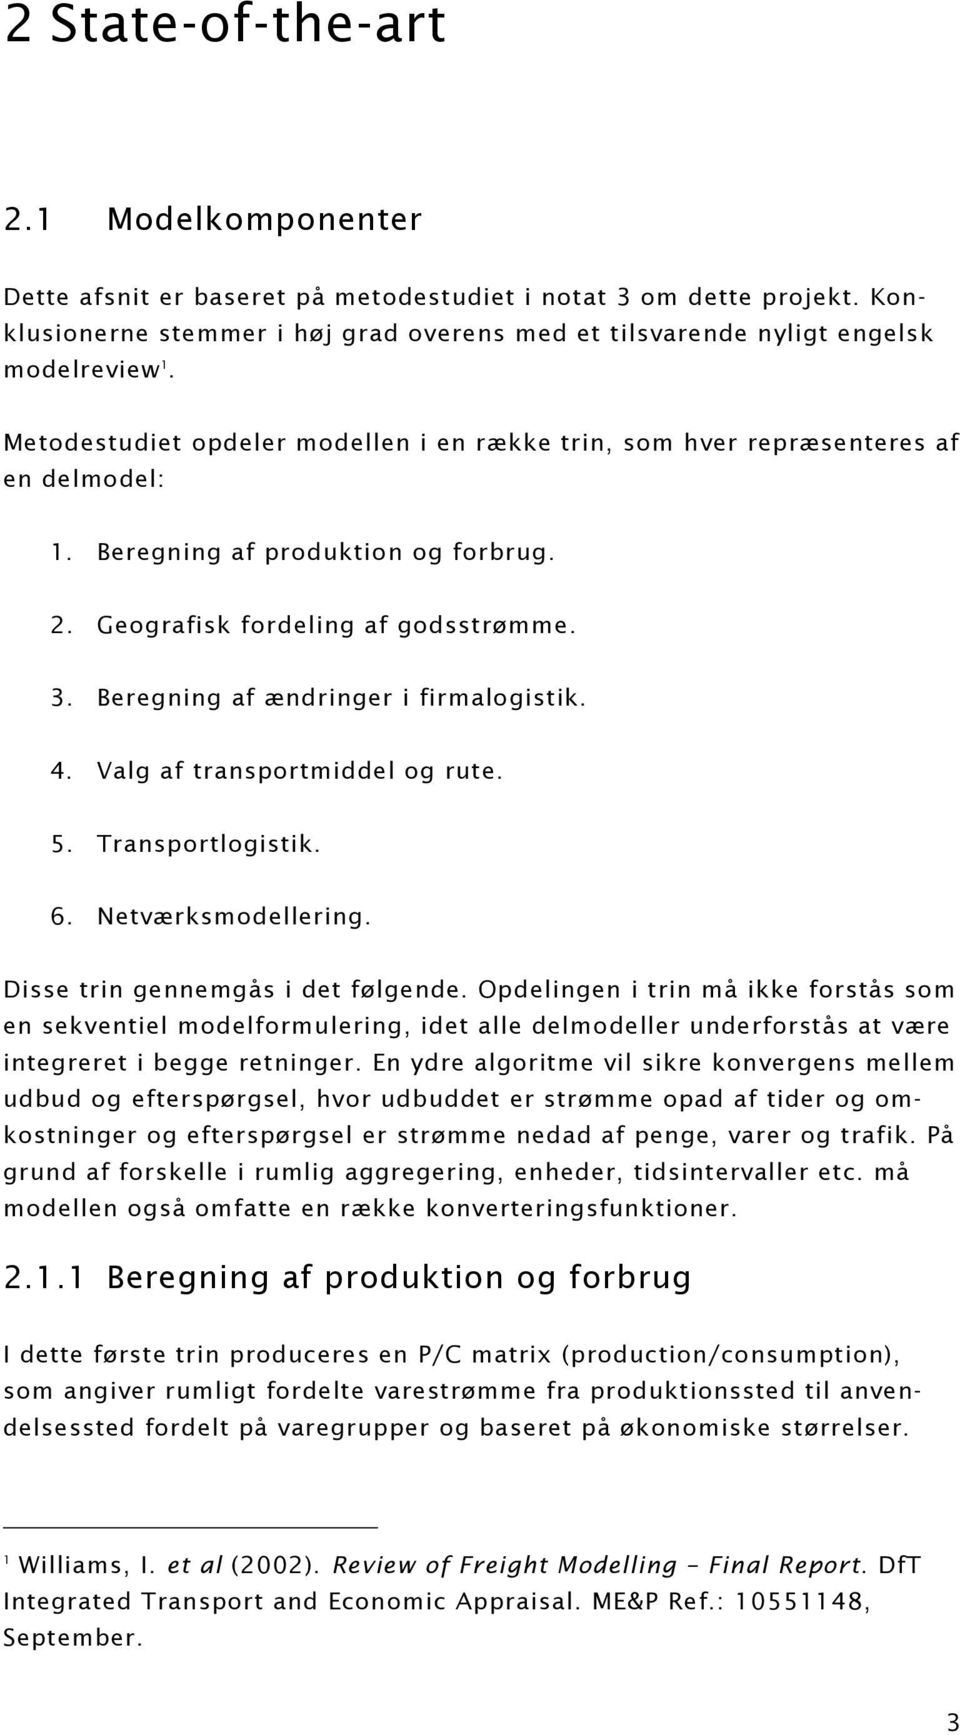 Beregning af ændringer i firmalogistik. 4. Valg af transportmiddel og rute. 5. Transportlogistik. 6. Netværksmodellering. Disse trin gennemgås i det følgende.